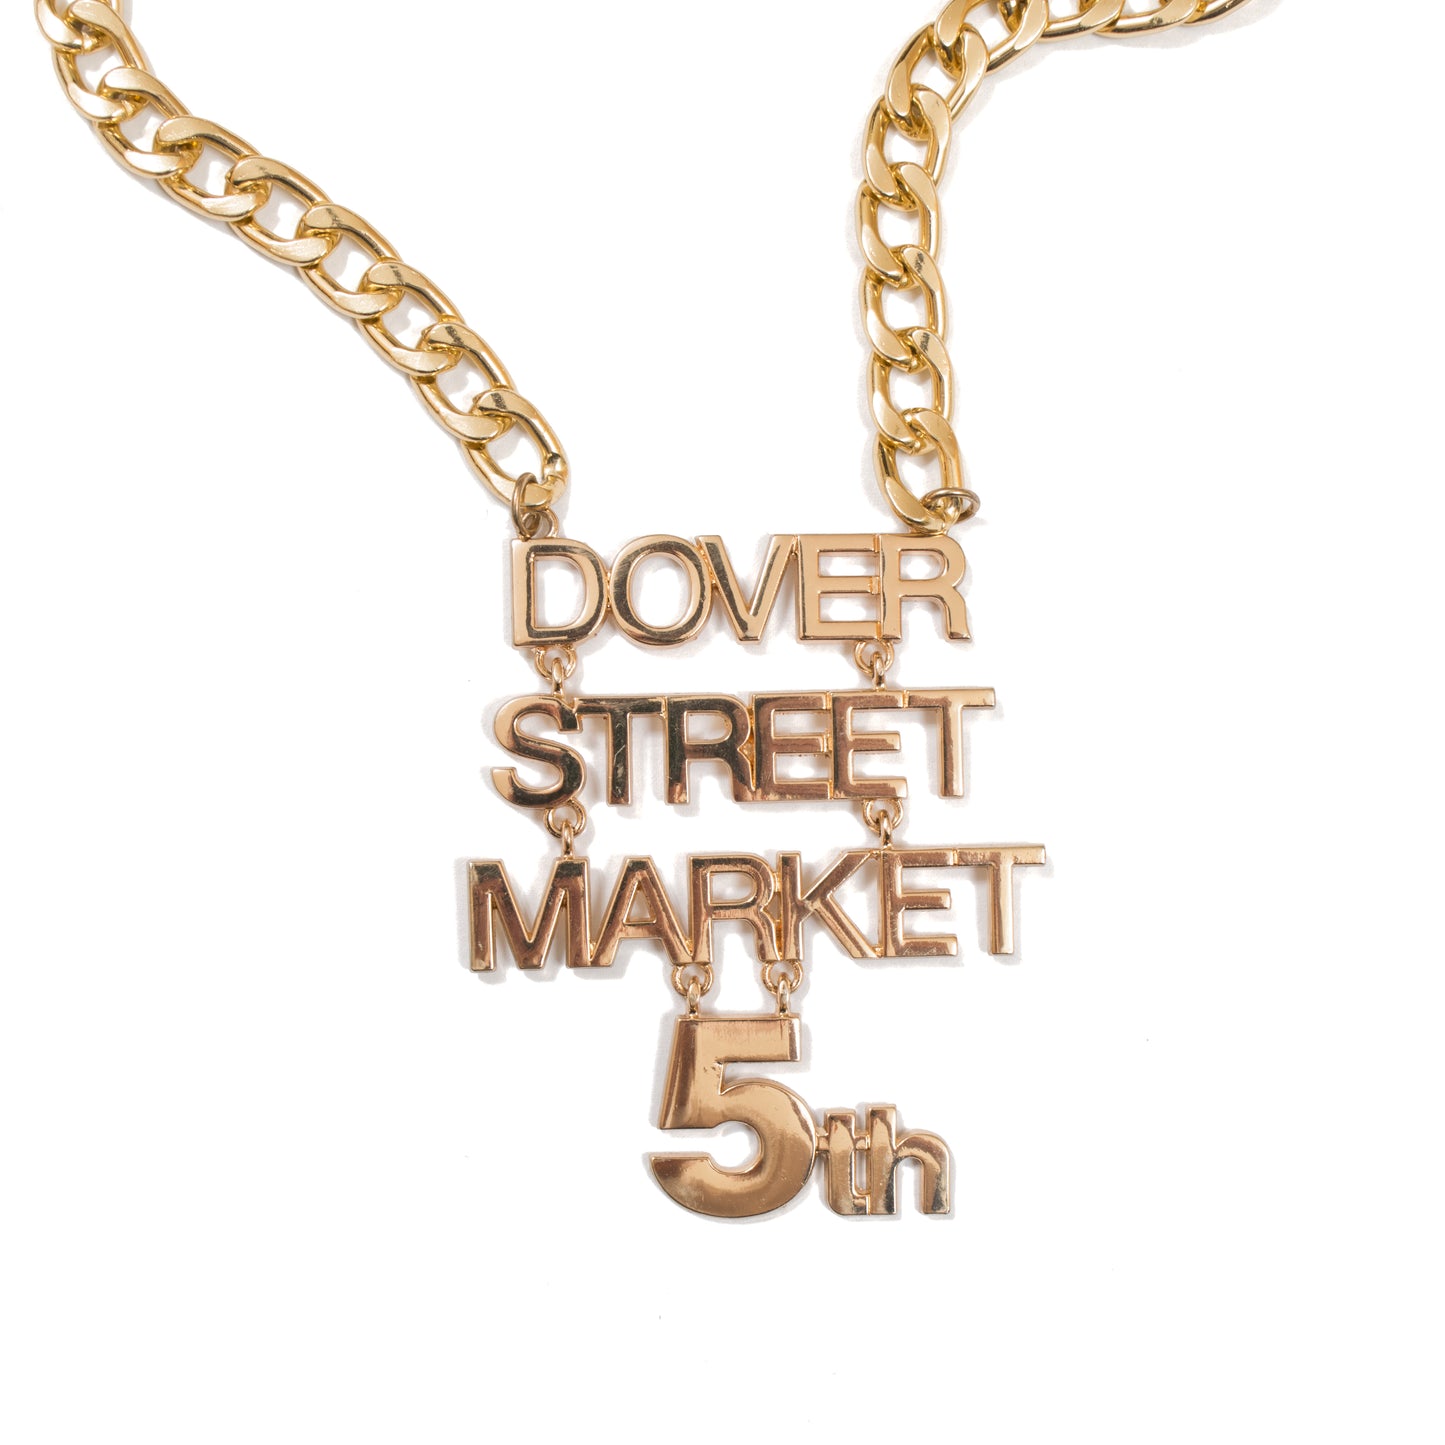 Dover Street Market 5th Anniversary Commemorative Chain